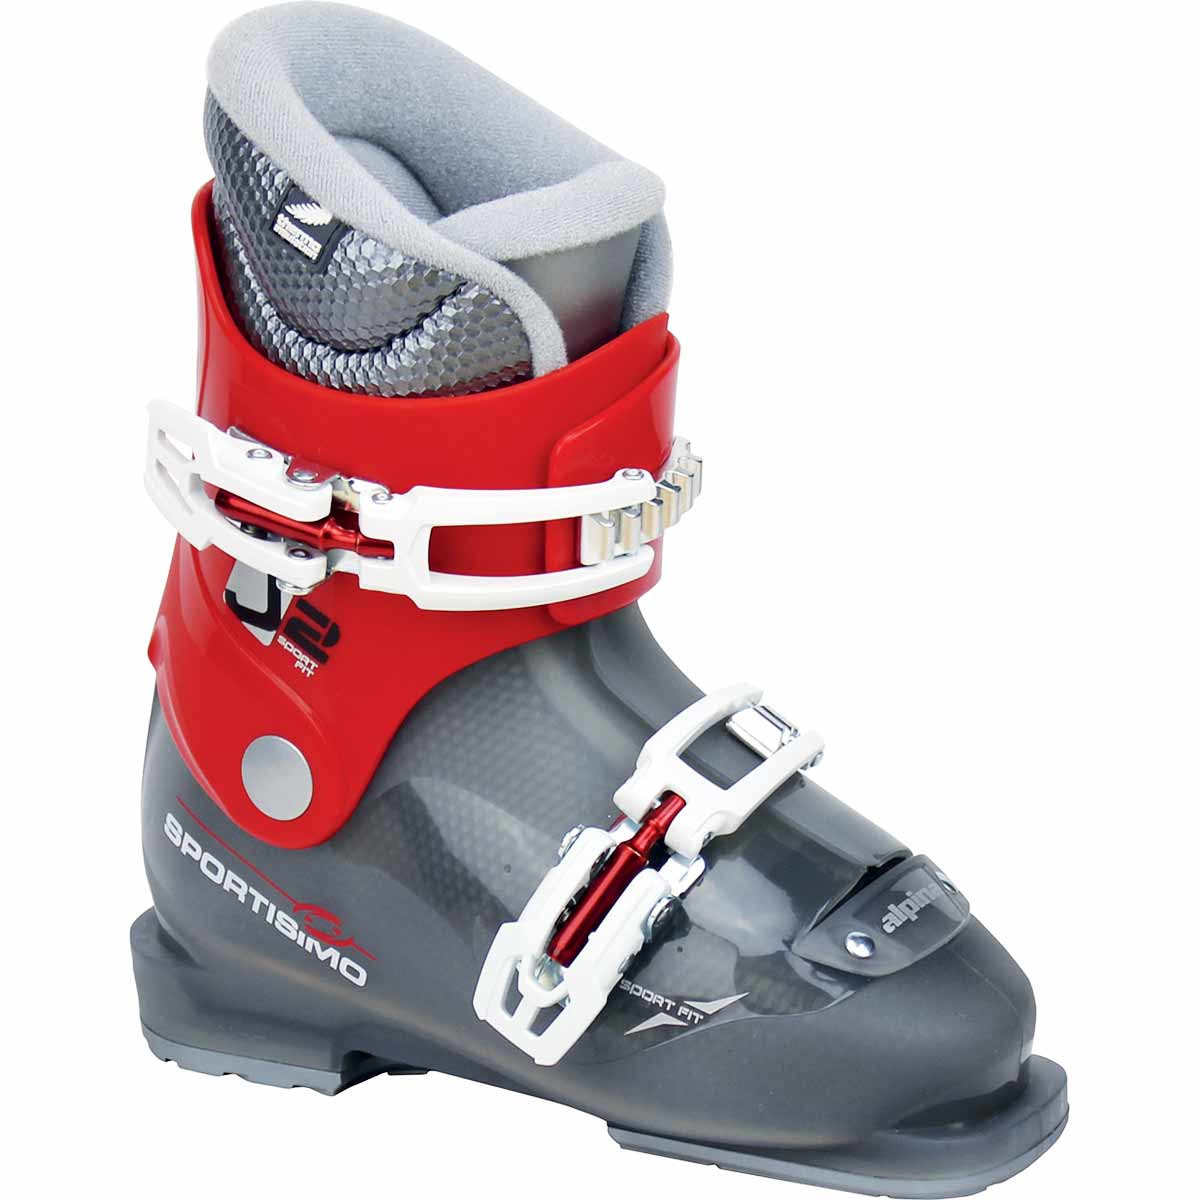 J2 - Childrens ski boots